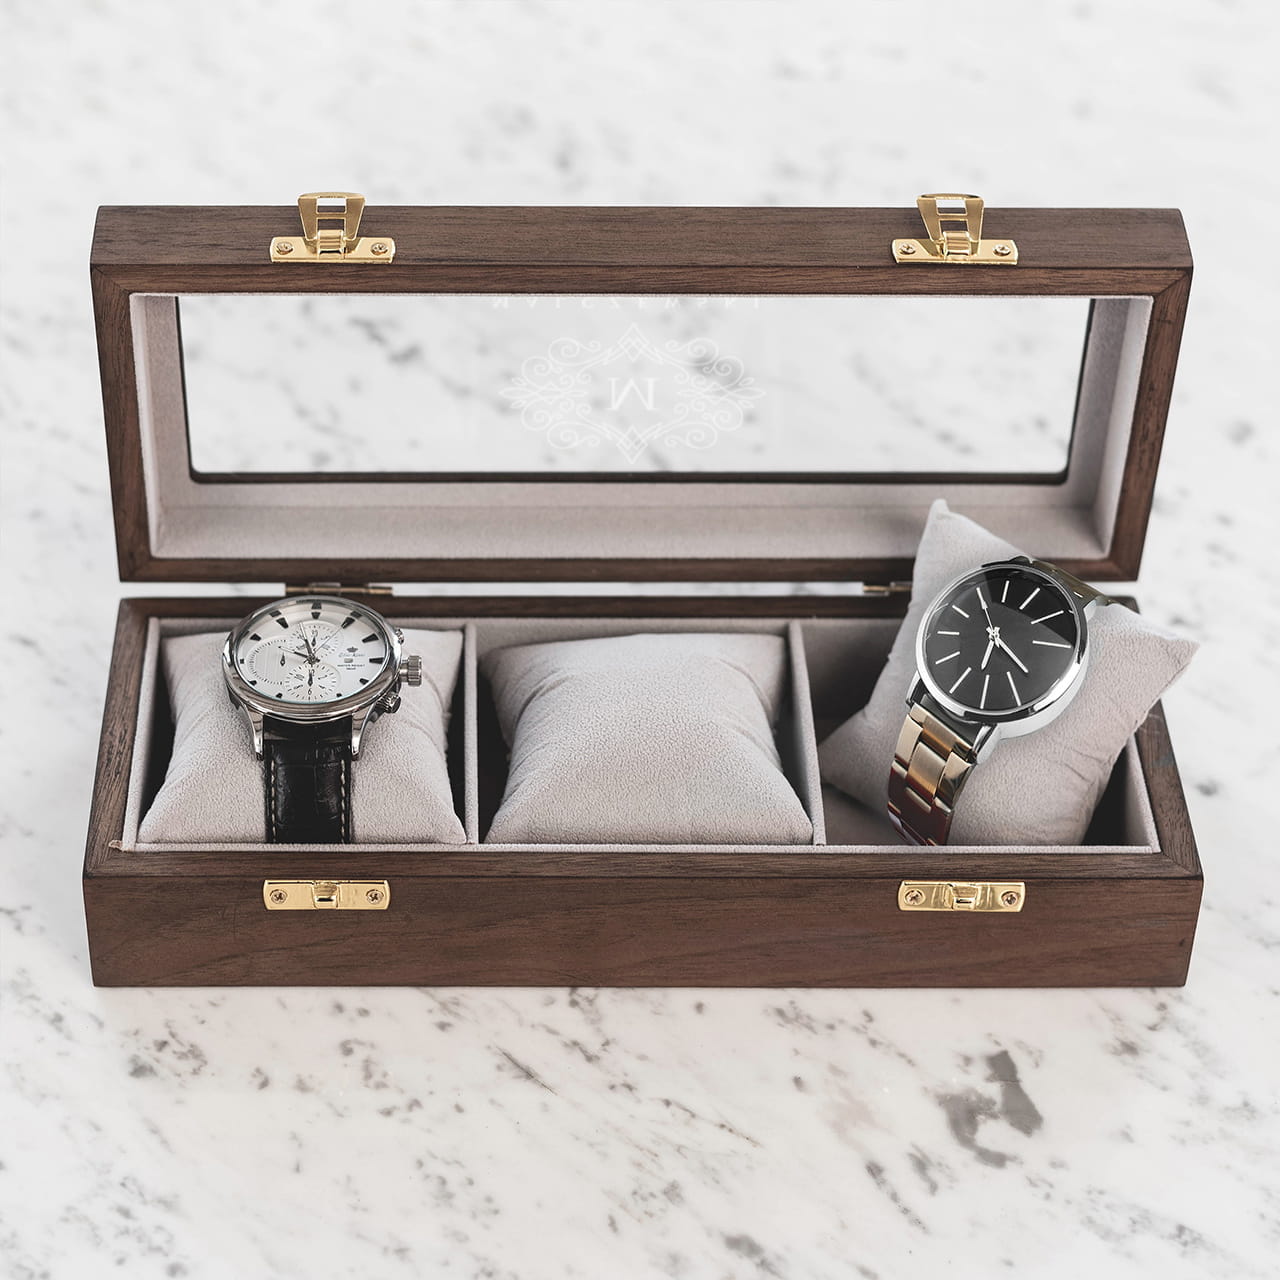 Drewniane pudełko na zegarki z grawerem to pomysł na praktyczny prezent dla szefa